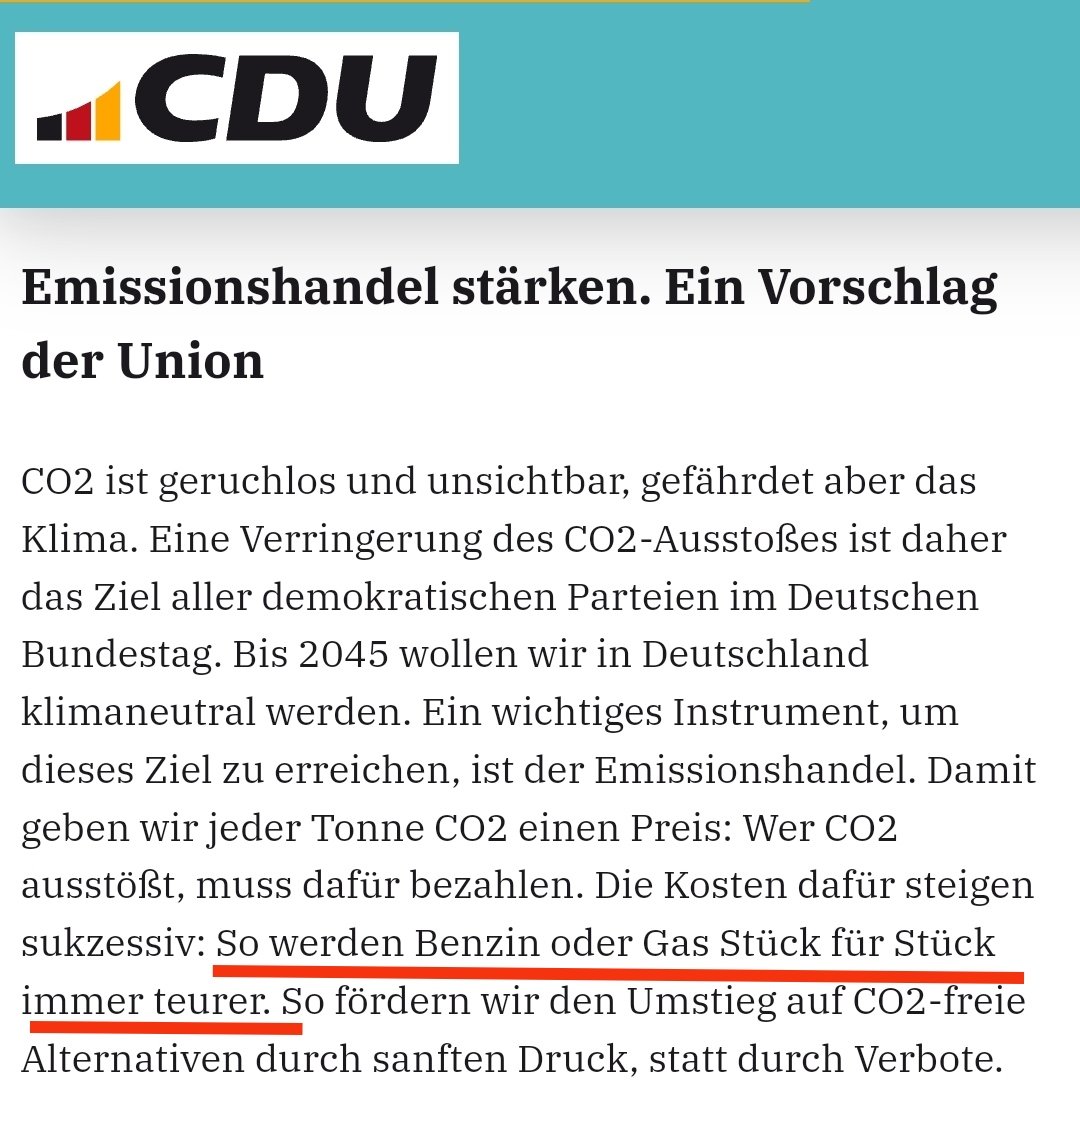 Die #CDU versteht zumindest auch den #Emissionshandel,dass dadurch Gas und Öl immer teurer werden 

Dennoch agitieren sie gegen #Wärmepumpen, die ohne Fossile auskommen,
und feiern jede neue Gasheizung

Ist das noch Heuchelei oder schon brutaler Betrug am Wähler?🤔
#NieMehrCDUCSU